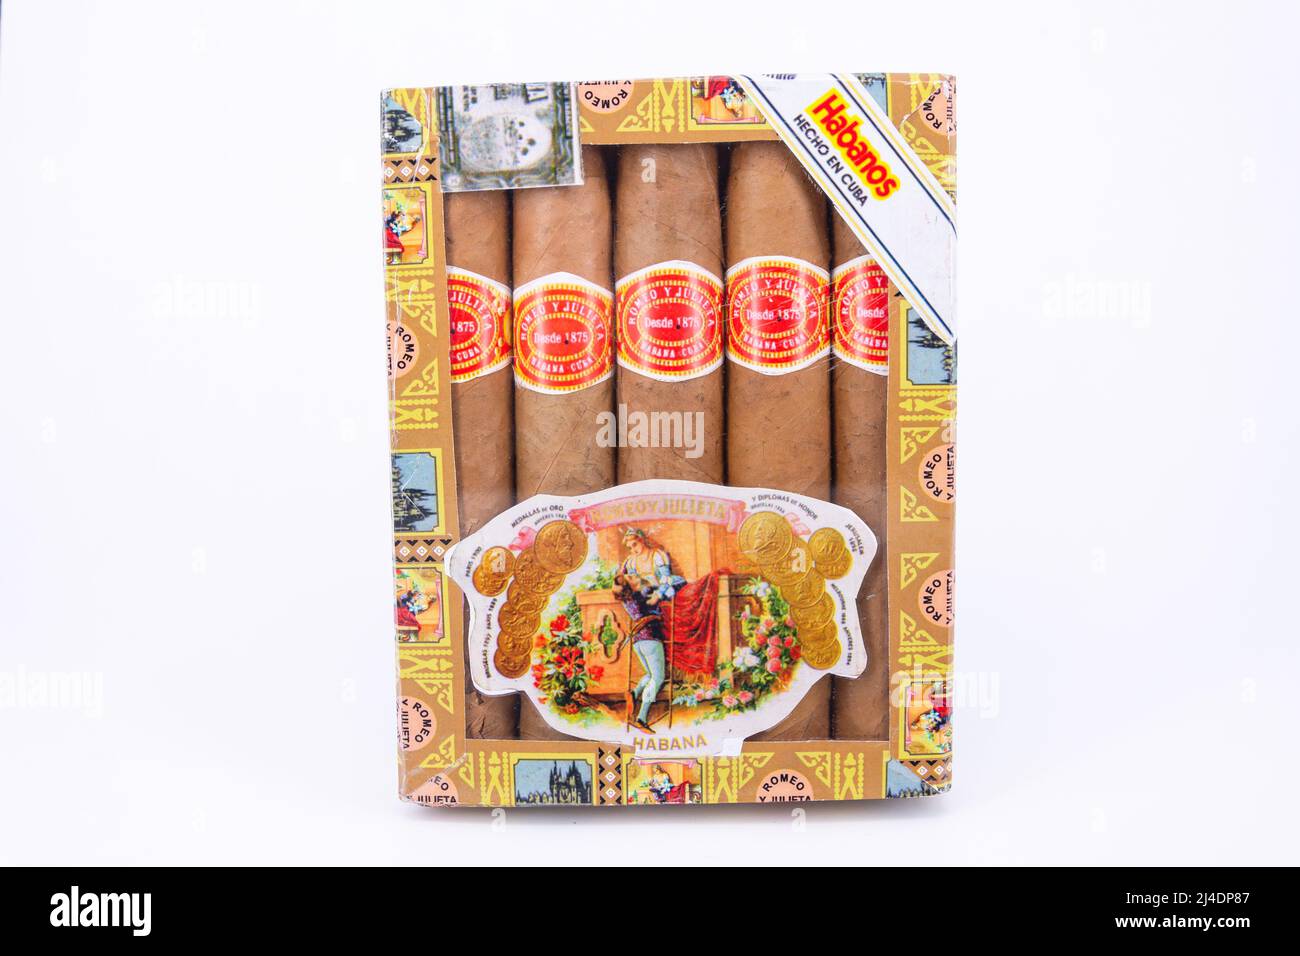 Confezione di sigari cubani Habanos, l'Avana Vecchia, l'Avana, la Habana, Repubblica di Cuba Foto Stock